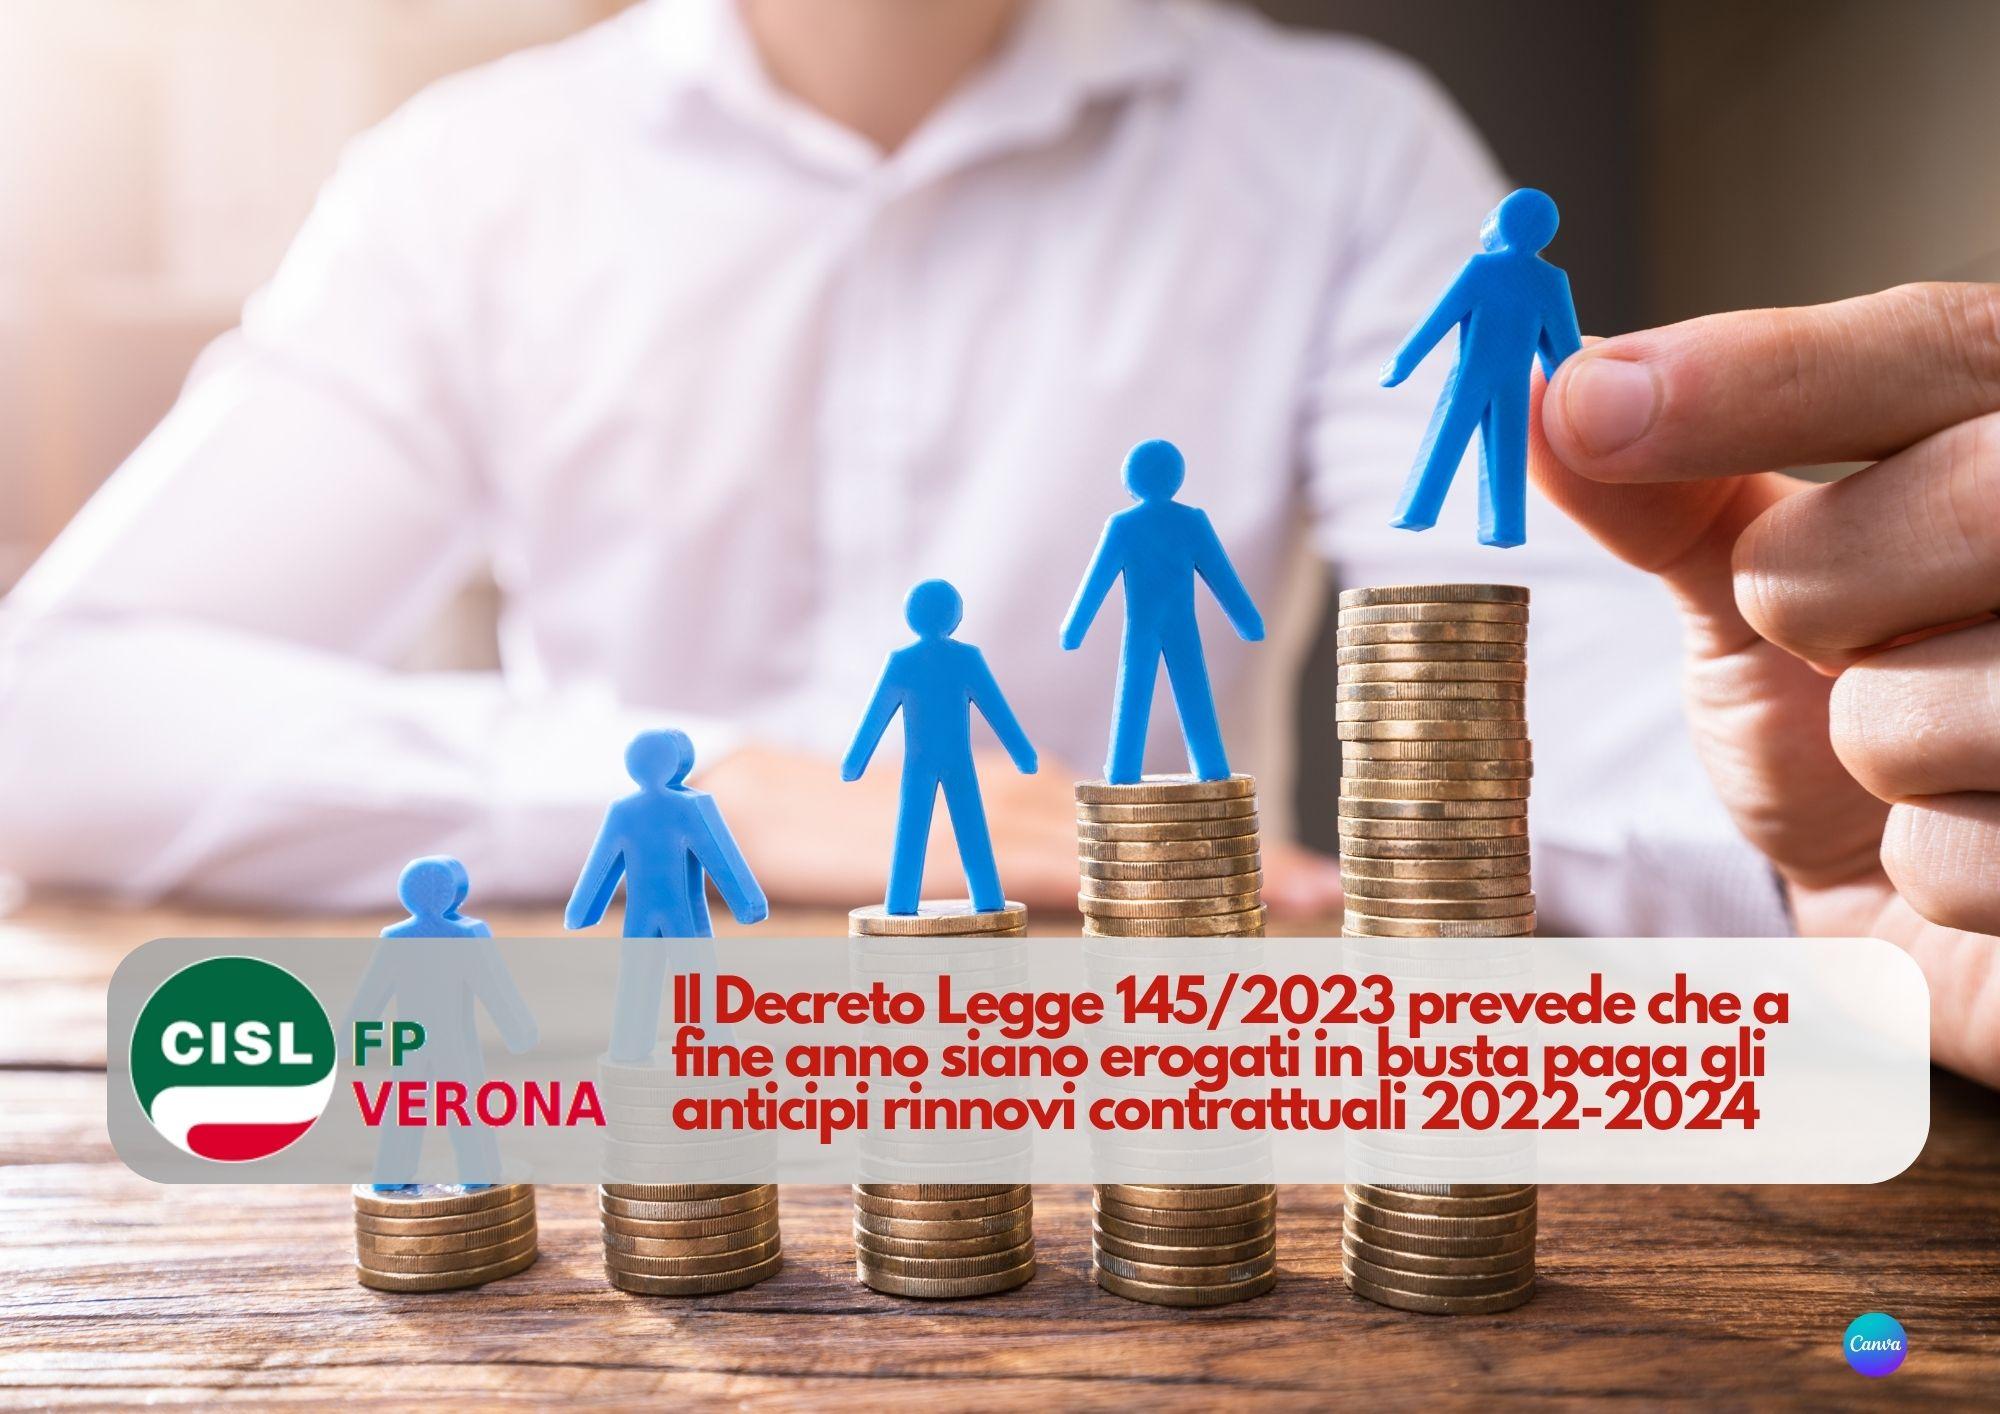 CISL FP Verona. A fine anno previsti in busta paga anticipi rinnovi contrattuali 2022-2024 pubblico impiego